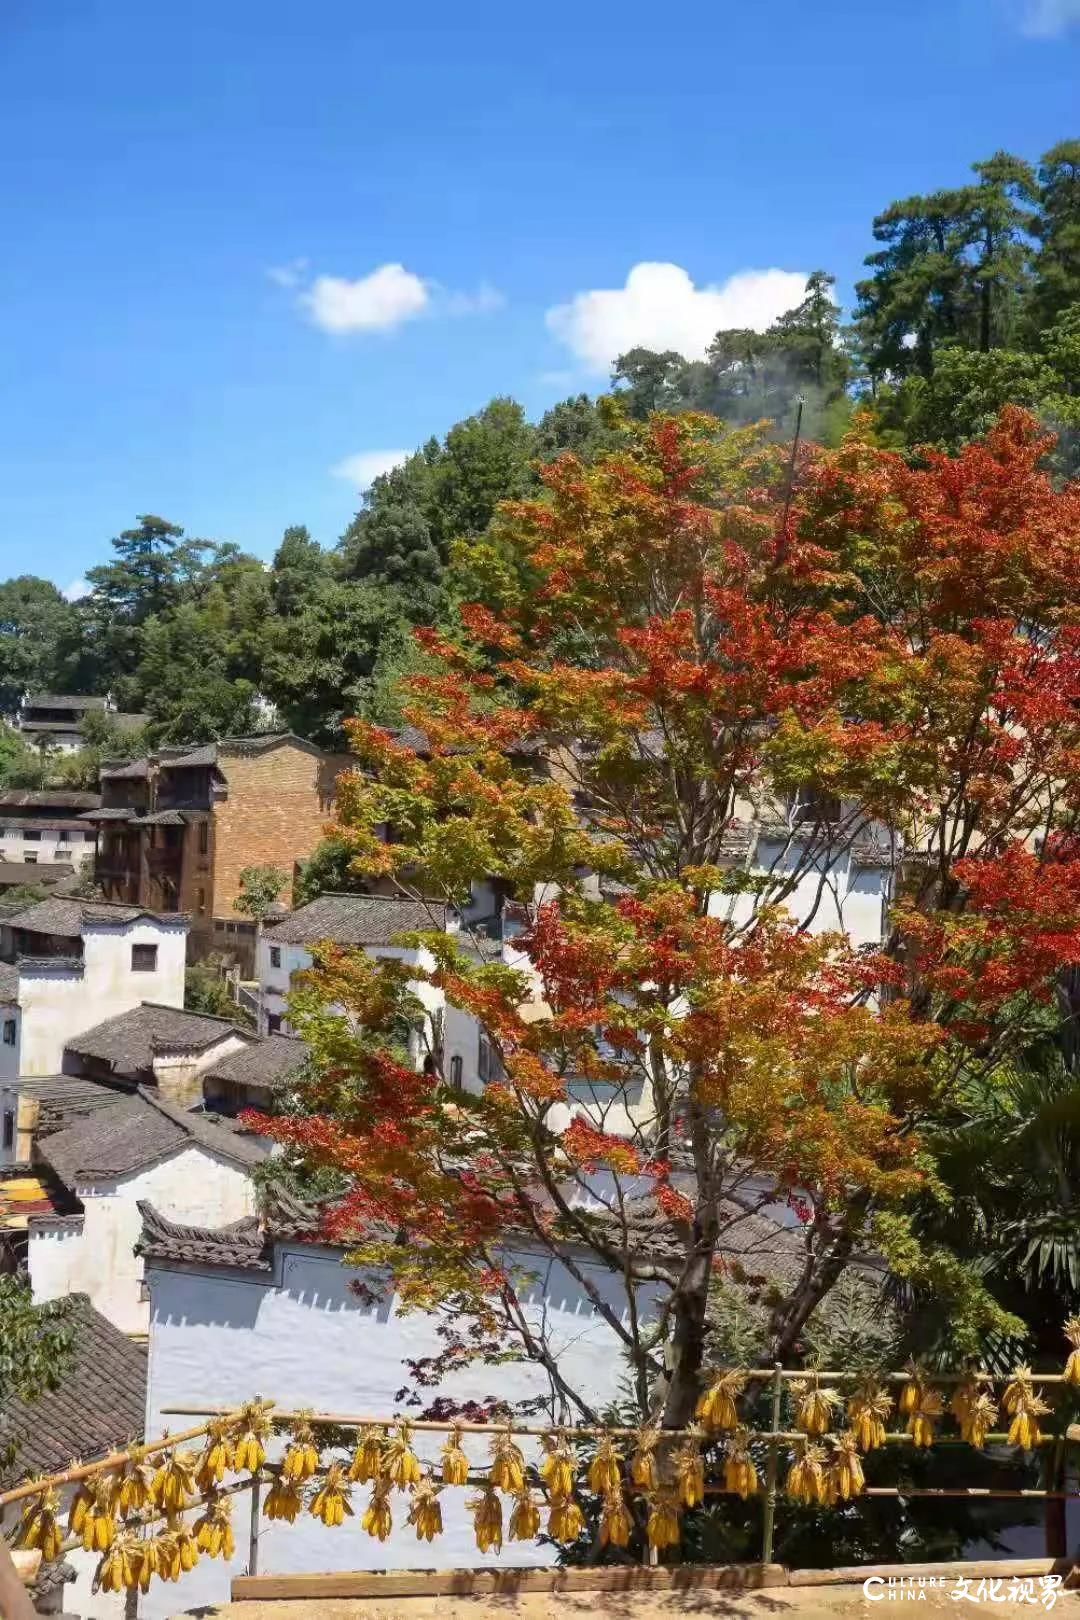 除了婺源的篁岭，还有最古老的徽派建筑——这个假期，跟嘉华旅游一起去江西看最美的秋天符号吧